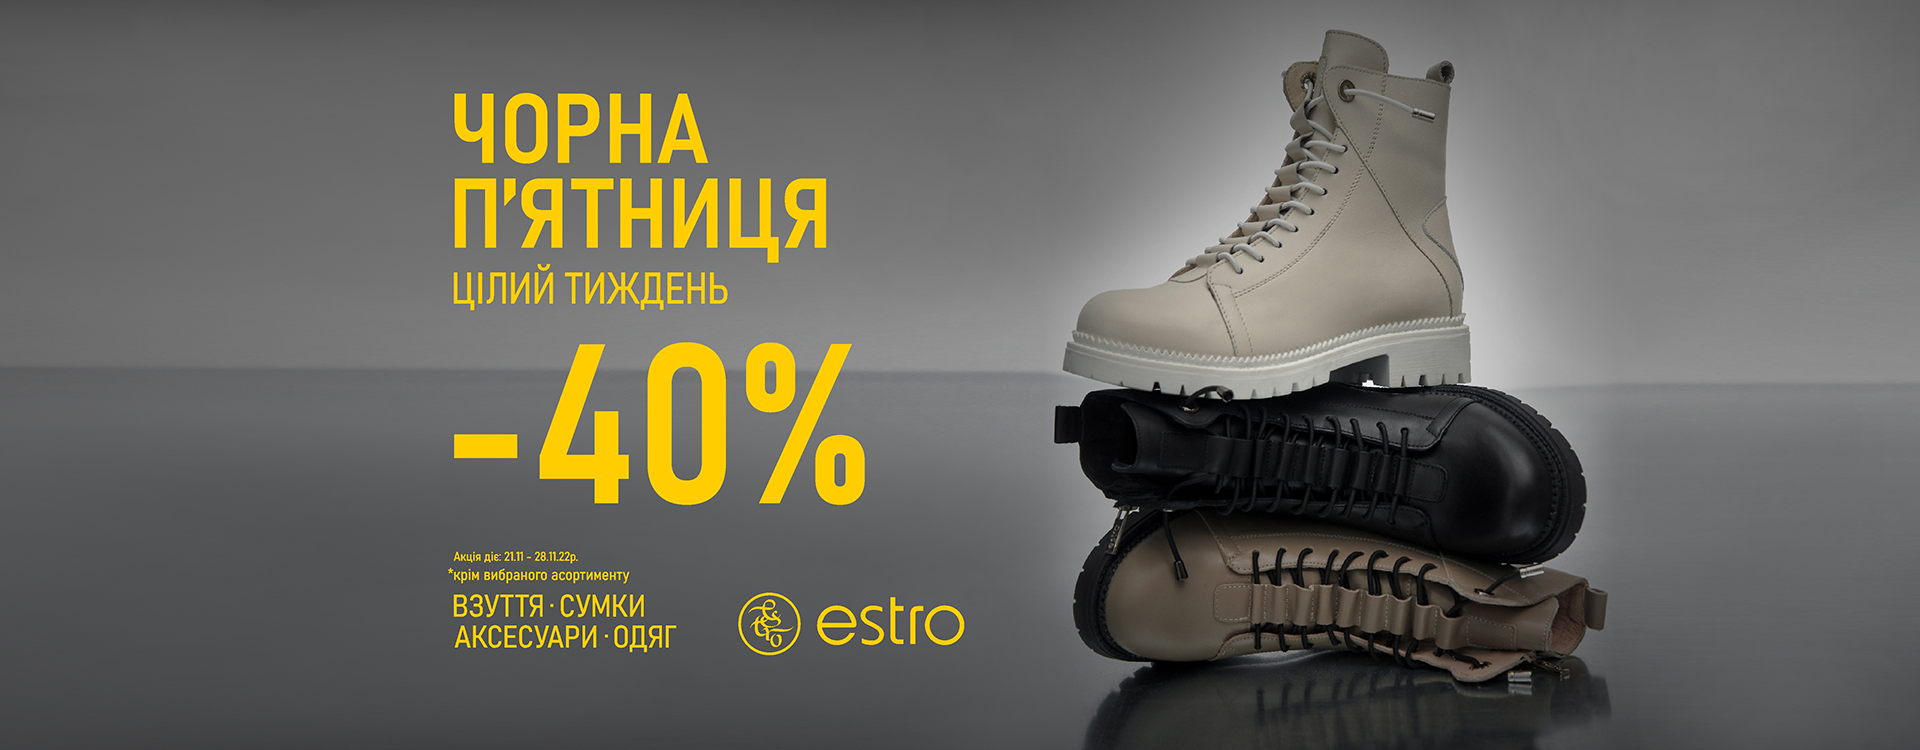 -40% на взуття, одяг, сумки та аксесуари